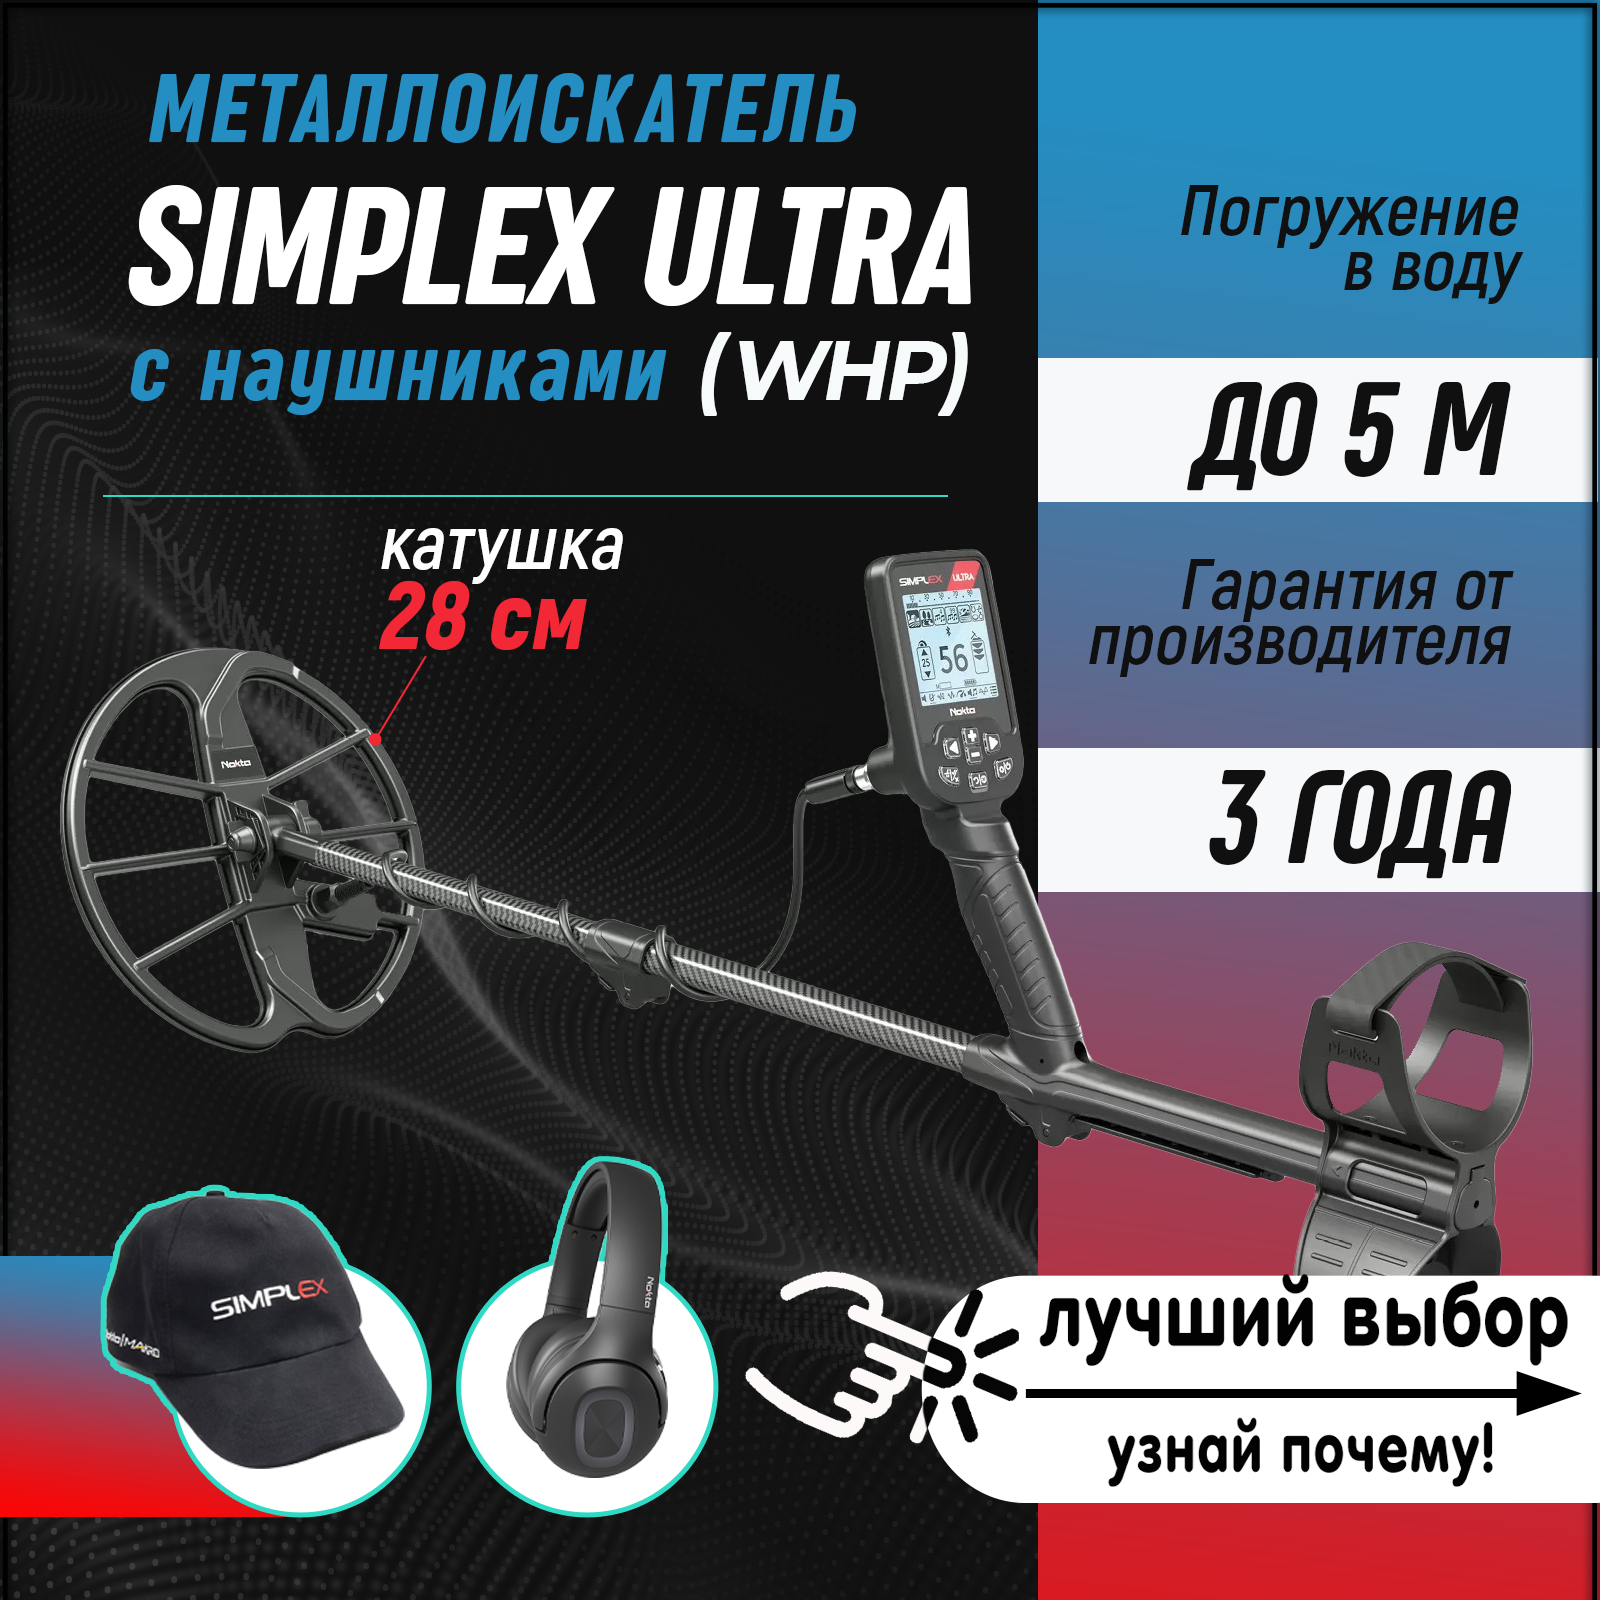 Металлоискатель Nokta Simplex ULTRA WHP с катушкой 11' DD и наушниками